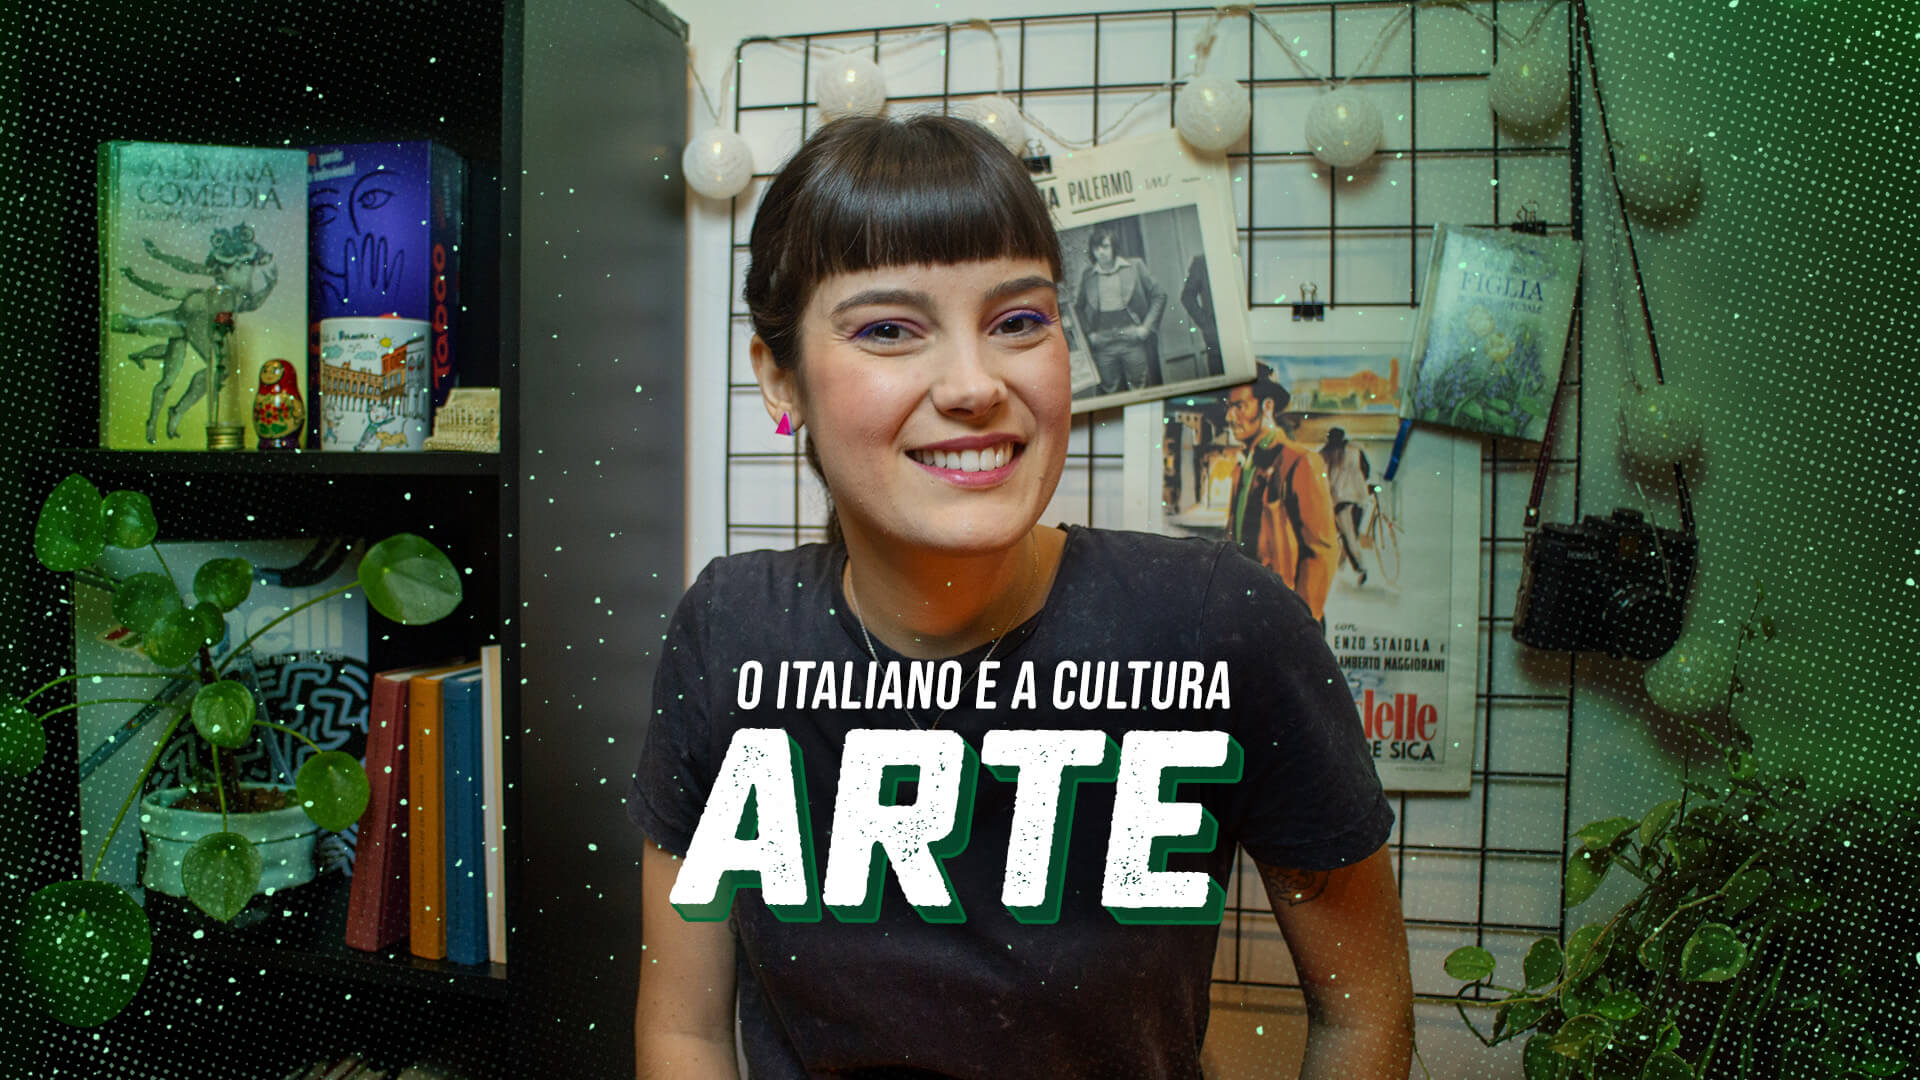 O italiano e a cultura - Arte